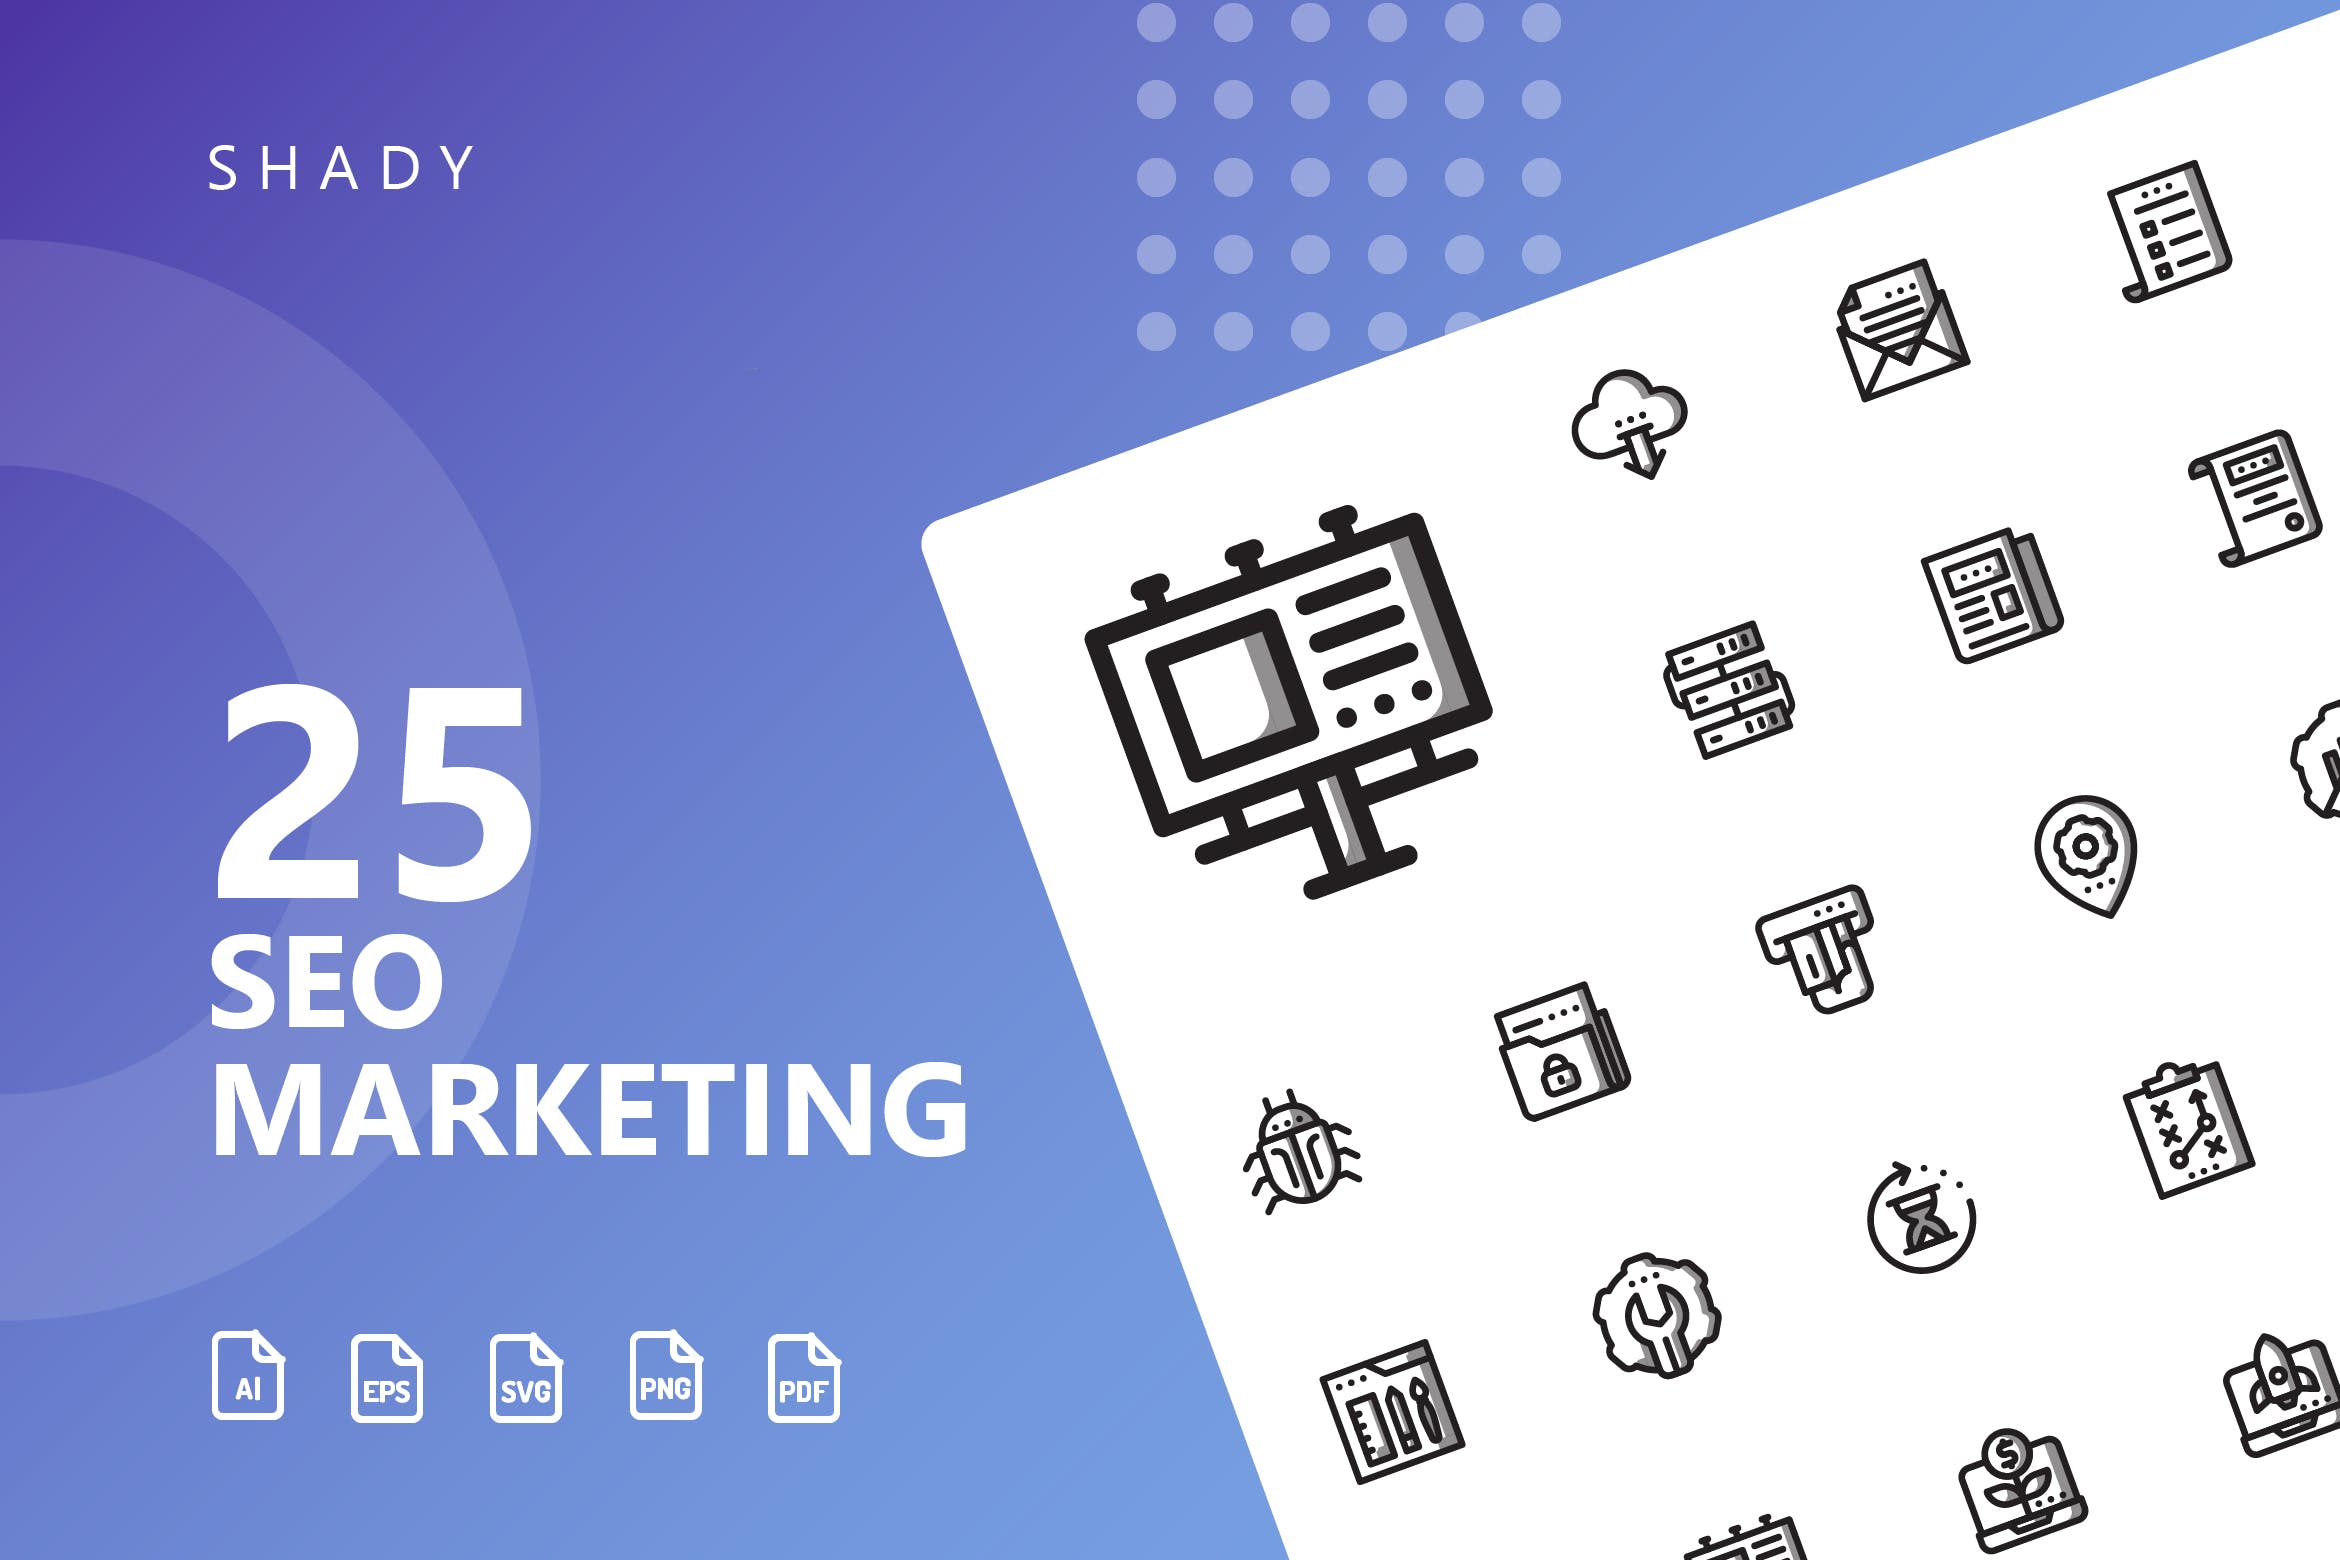 25枚SEO搜索引擎优化营销矢量阴影素材库精选图标v1 SEO Marketing Shady Icons插图